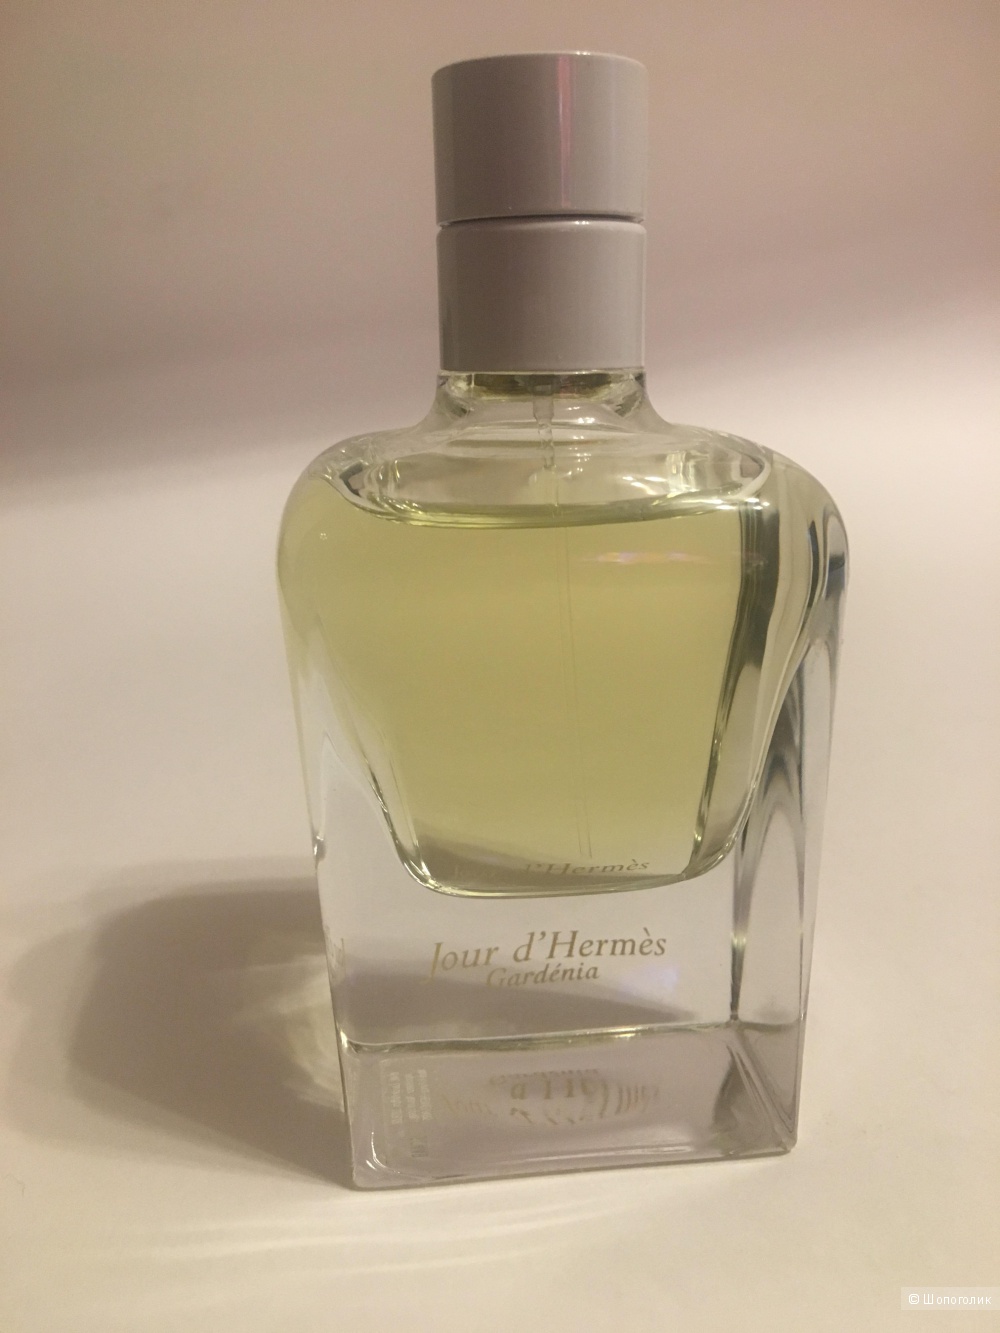 EDP Hermes Jour d’Hermes Gardenia парфюм, 85ml